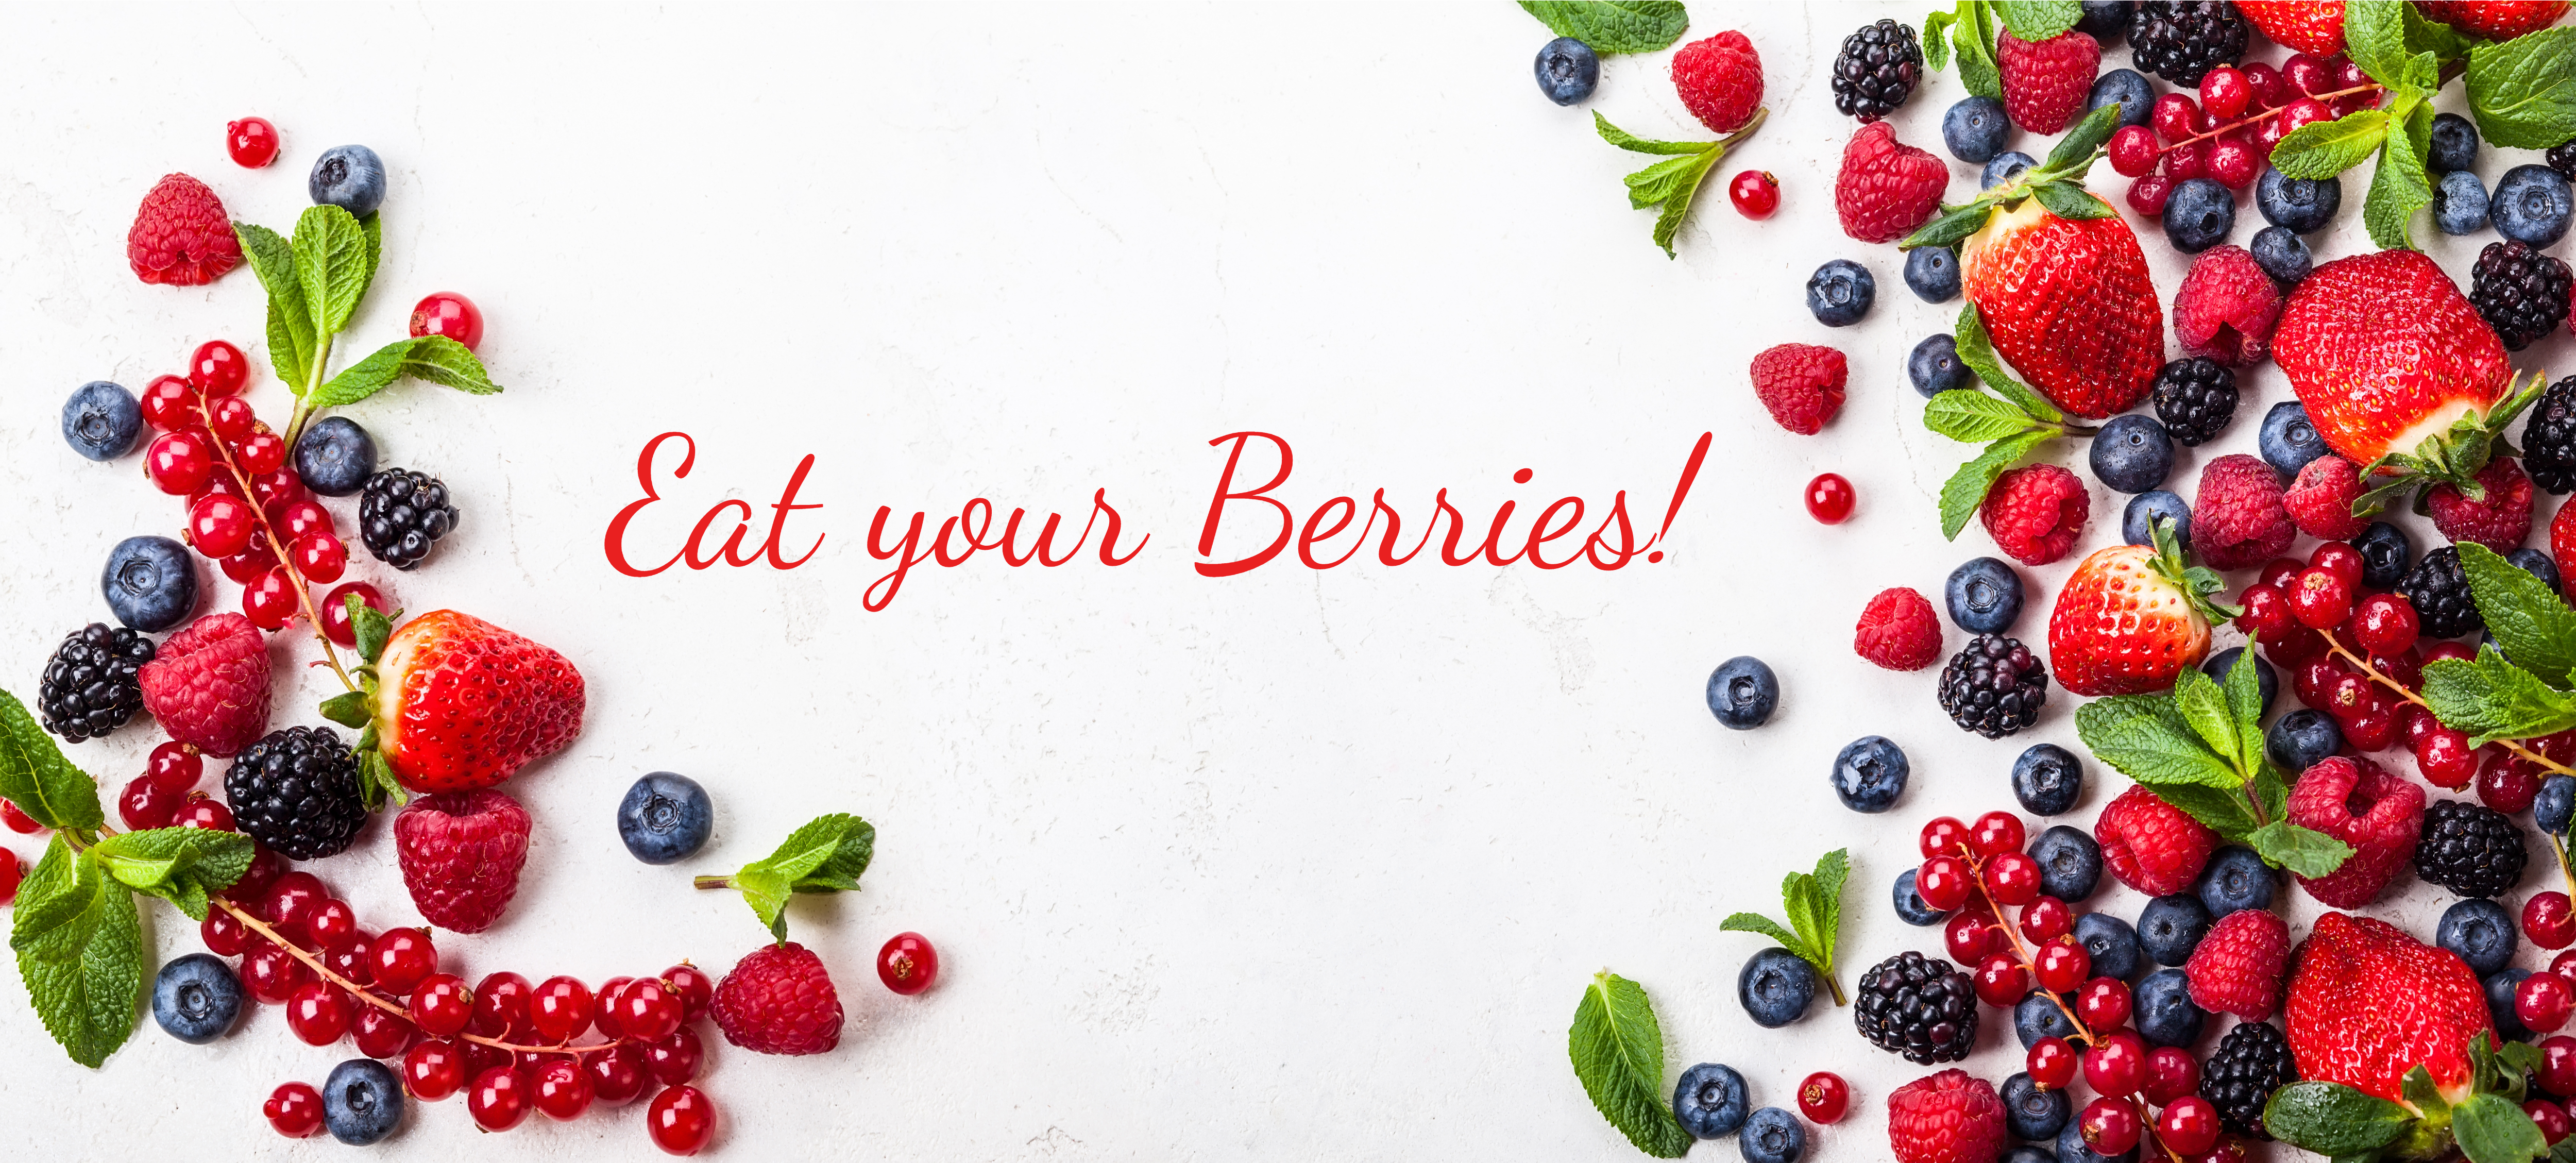 Eat Your Berries!